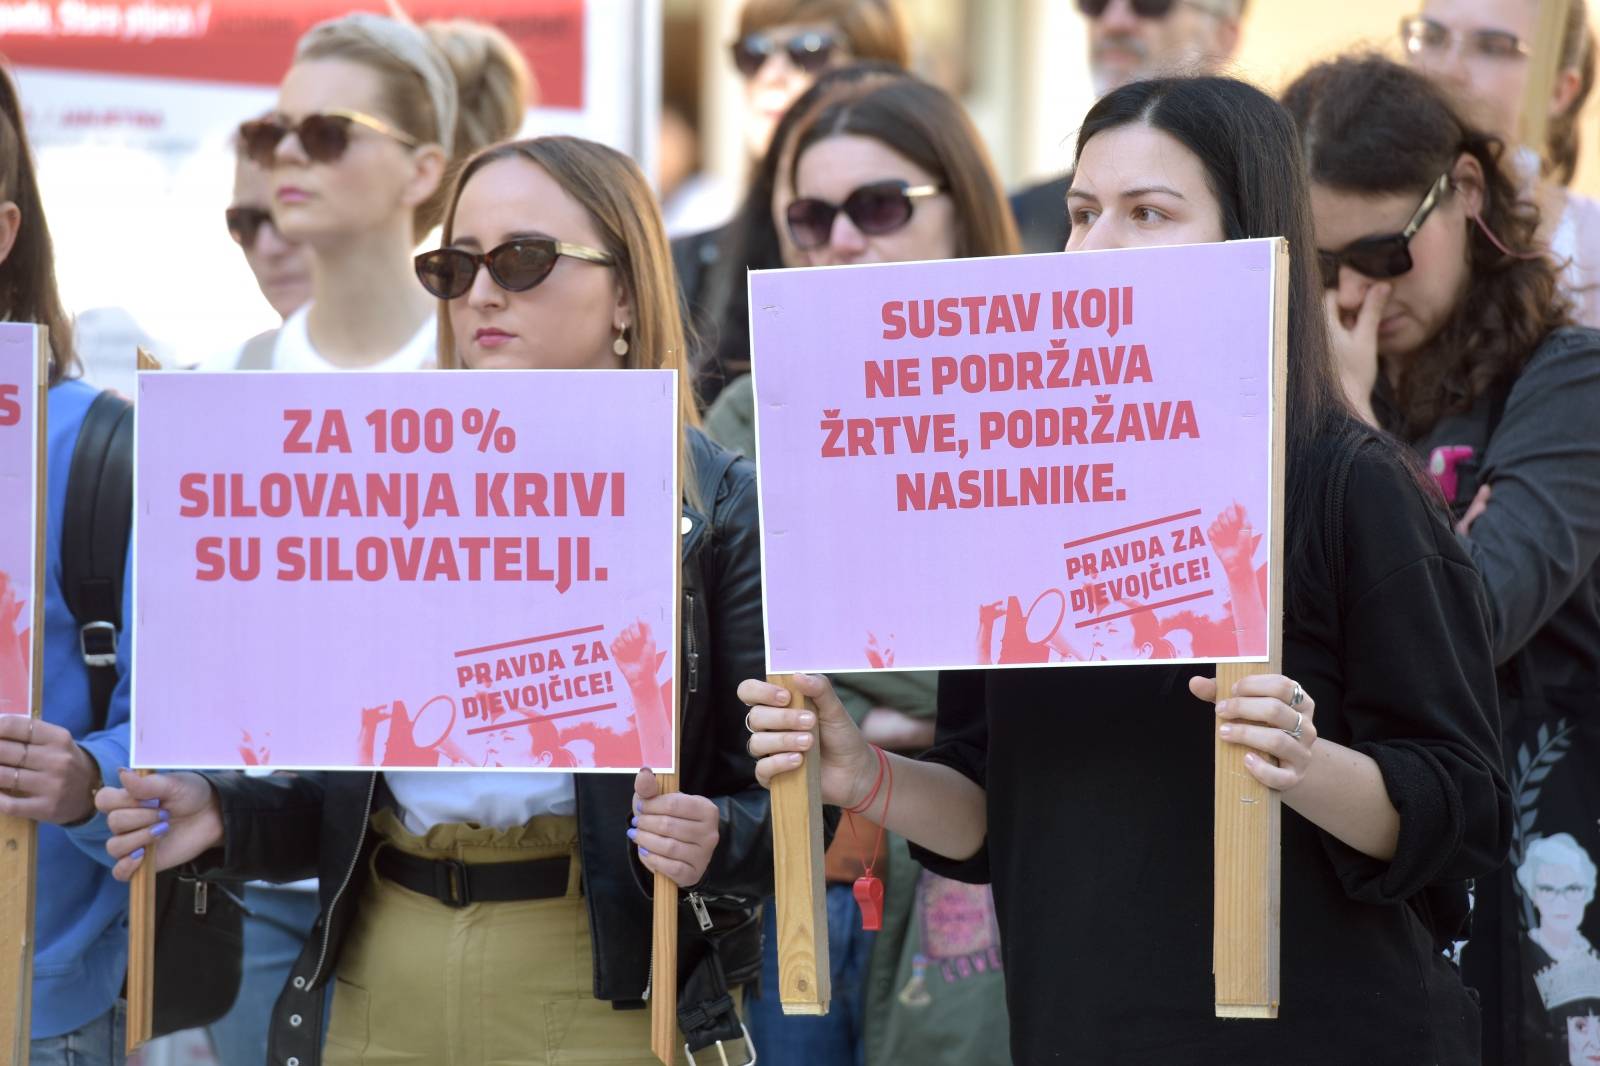 Stotinjak graÄana okupilo se na prosvjedu "Pravda za djevojcice"